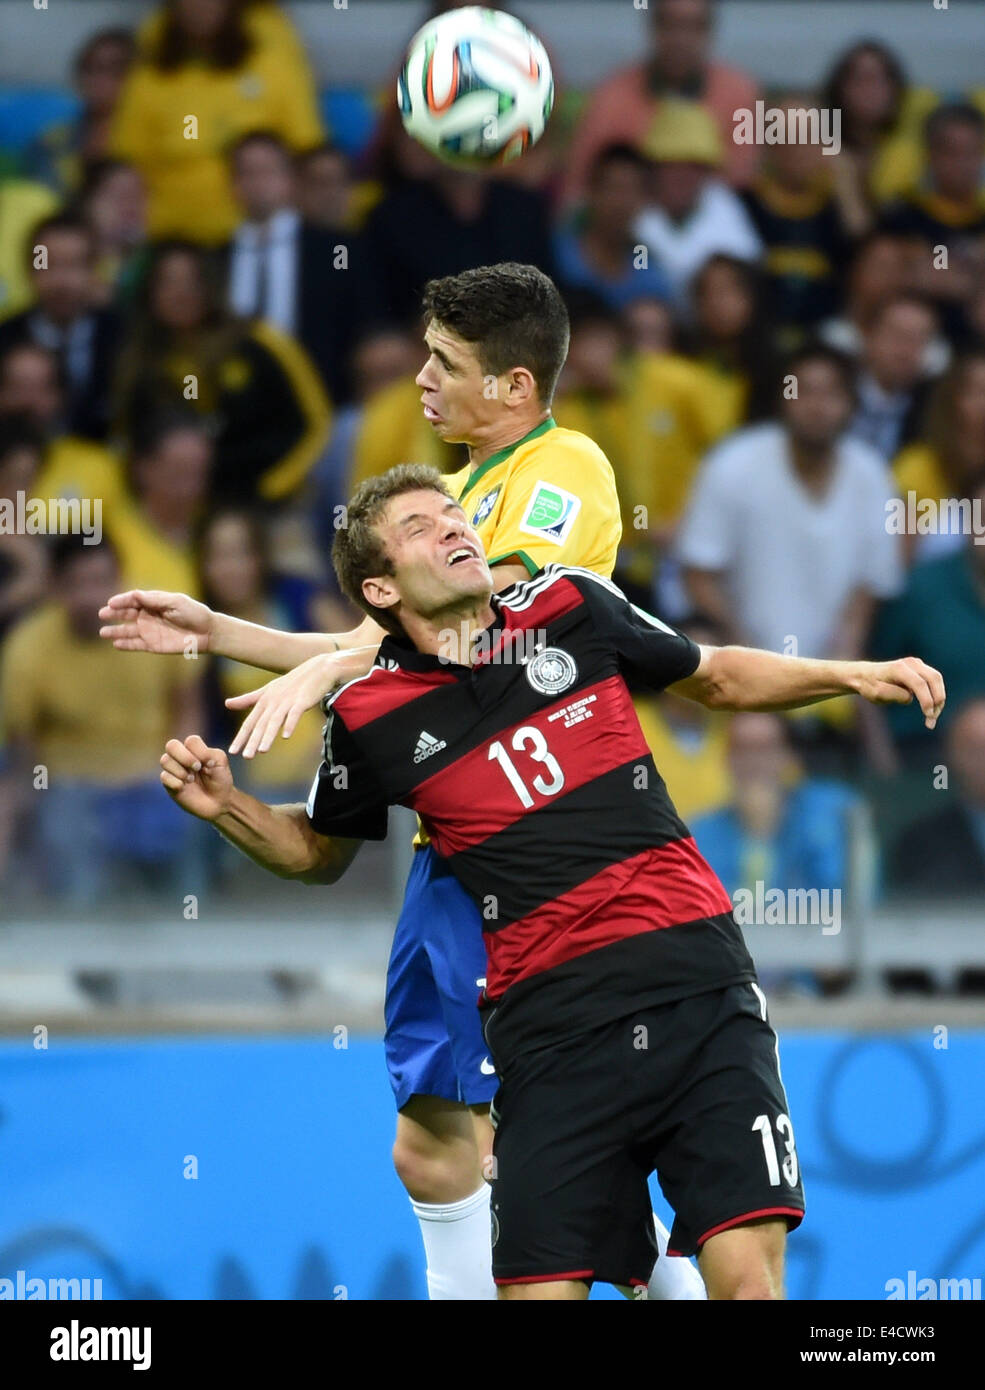 Belo Horizonte, Brésil. 8 juillet, 2014. L'Allemagne Thomas Muller (avant) est en compétition pour un en-tête avec Oscar du Brésil (C) au cours d'un match de demi-finale entre le Brésil et l'Allemagne de la Coupe du Monde FIFA 2014 à l'Estadio Stade Mineirao de Belo Horizonte, Brésil, le 8 juillet 2014. L'Allemagne a gagné 7-1 sur le Brésil et s'est qualifié pour la finale de mardi. Crédit : Li Ga/Xinhua/Alamy Live News Banque D'Images